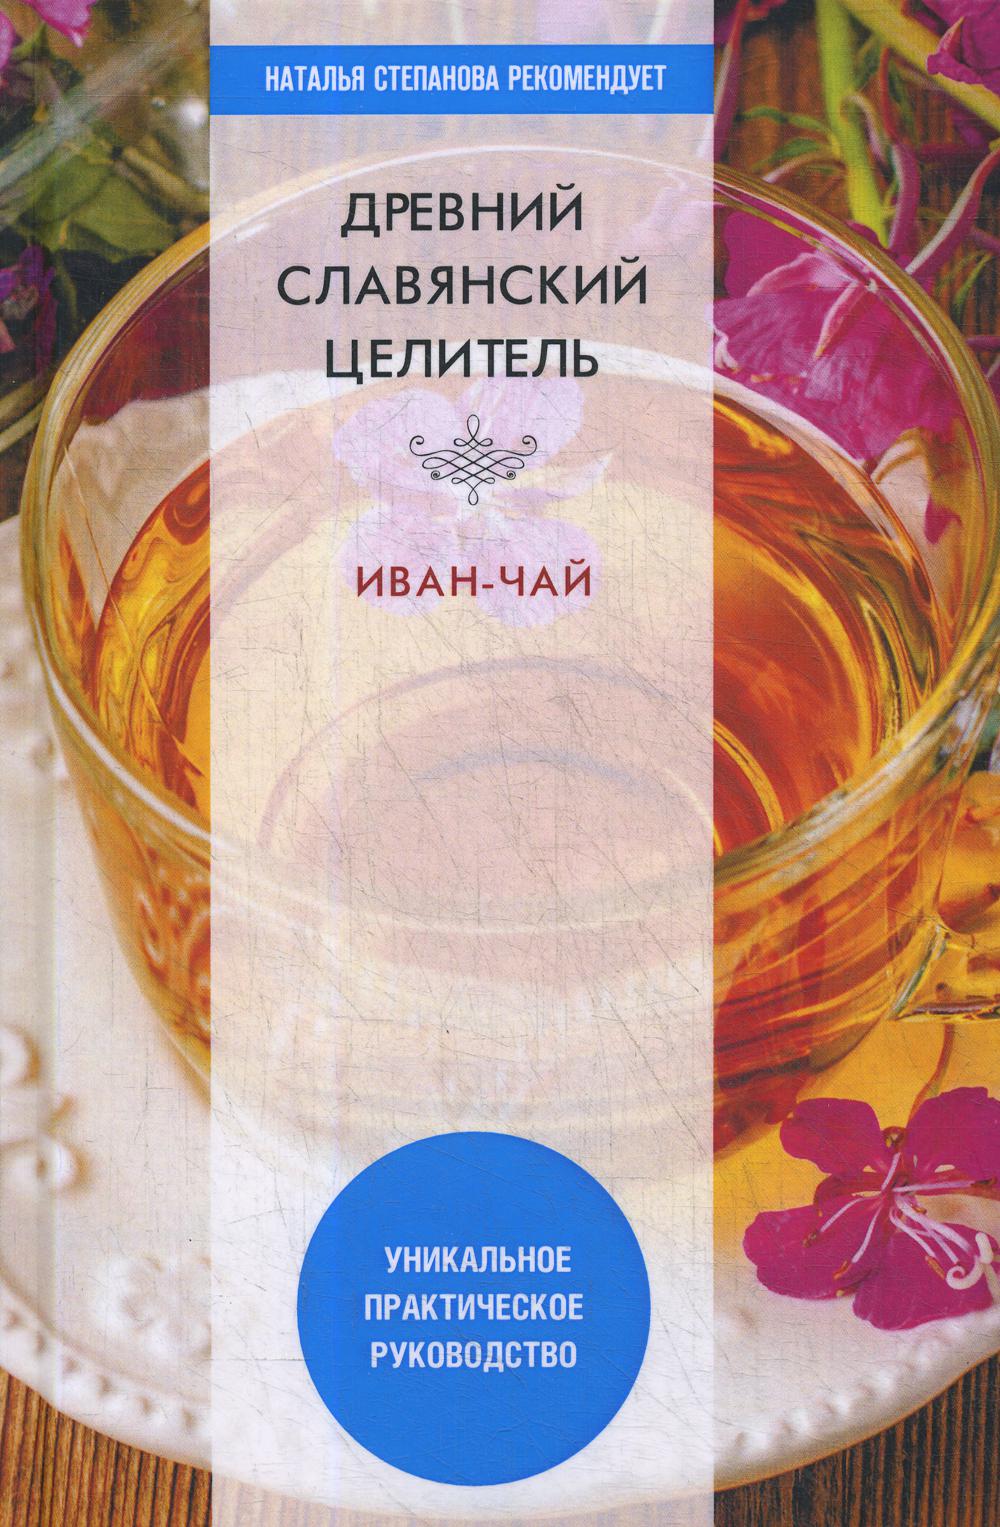 Древний славянский целитель иван-чай. Уникальное практическое руководство %% 